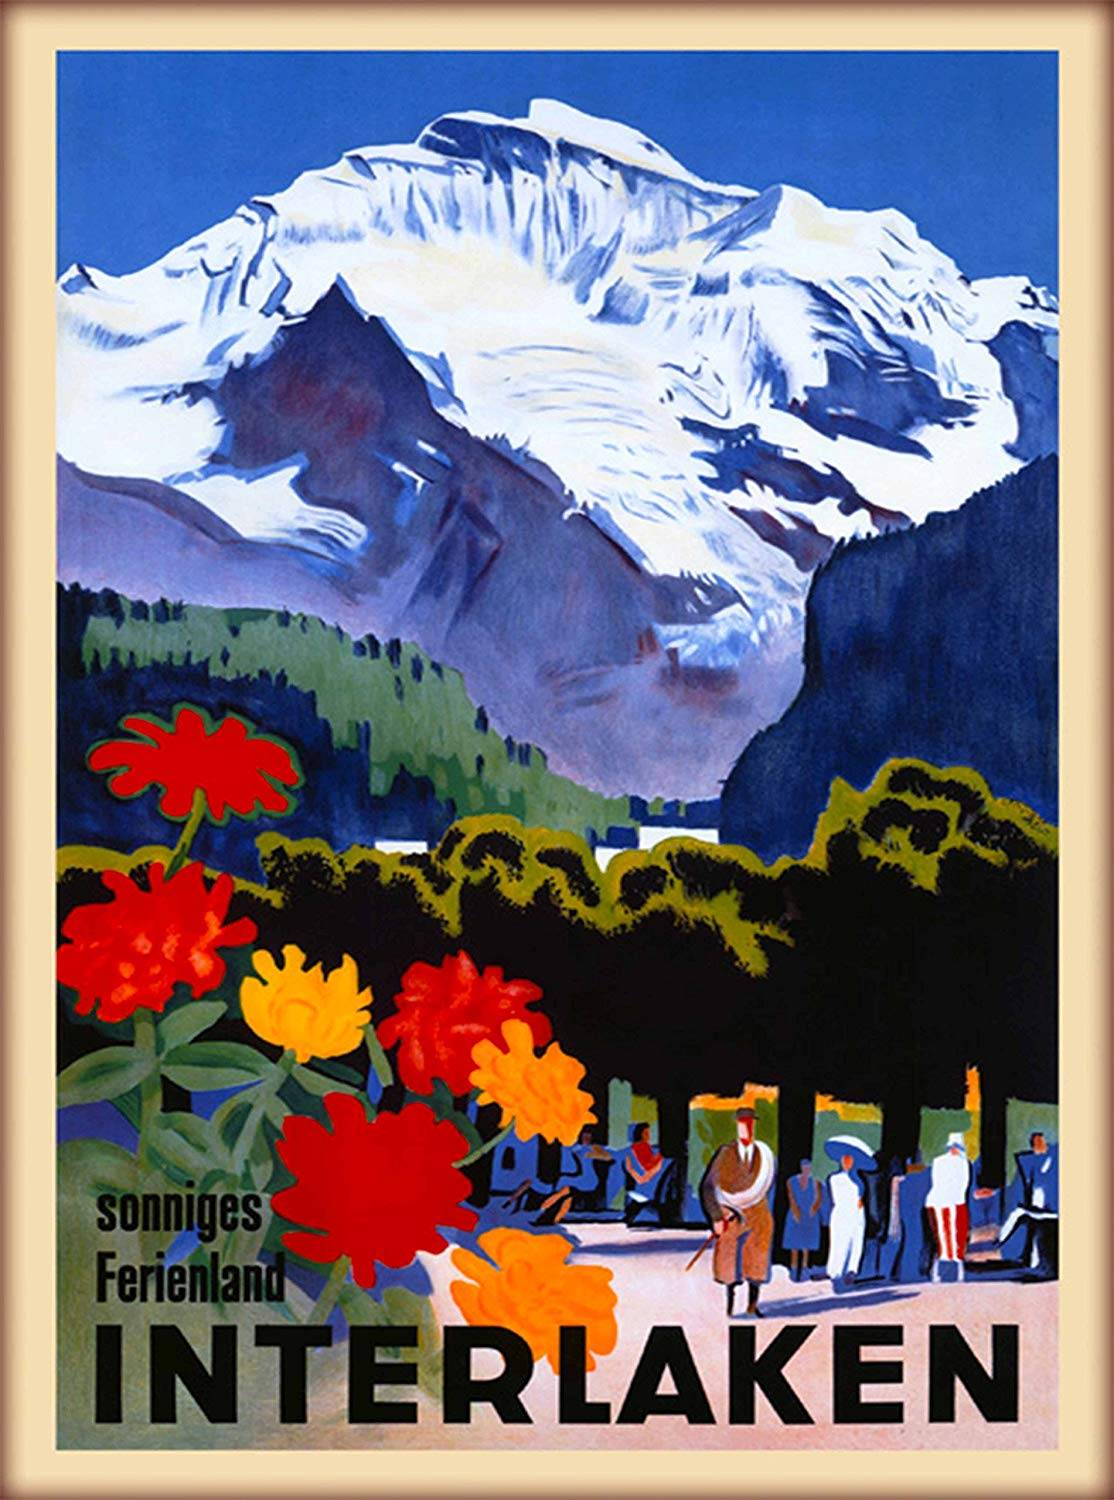 Interlaken Sonniges Ferienland Bern Switzerland Swiss Alps Vintage